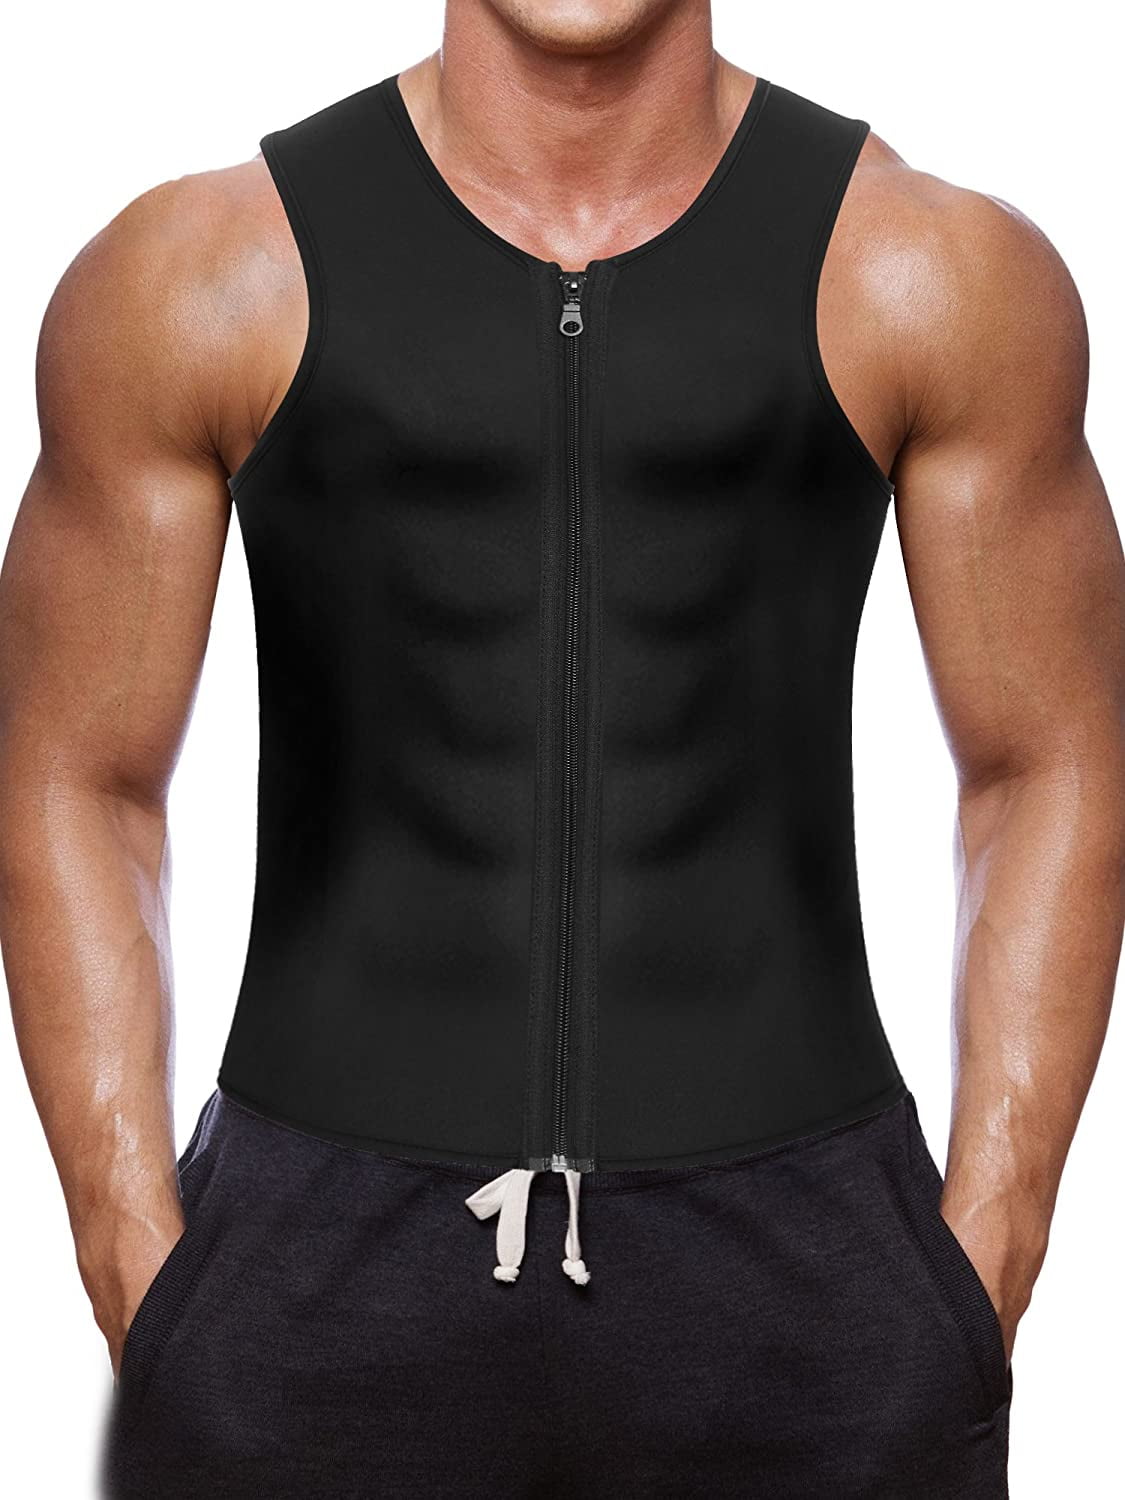 Men's Waist Trainer Vest for Weight Loss Sauna Hot Neoprene Body Shaper Tank Top 